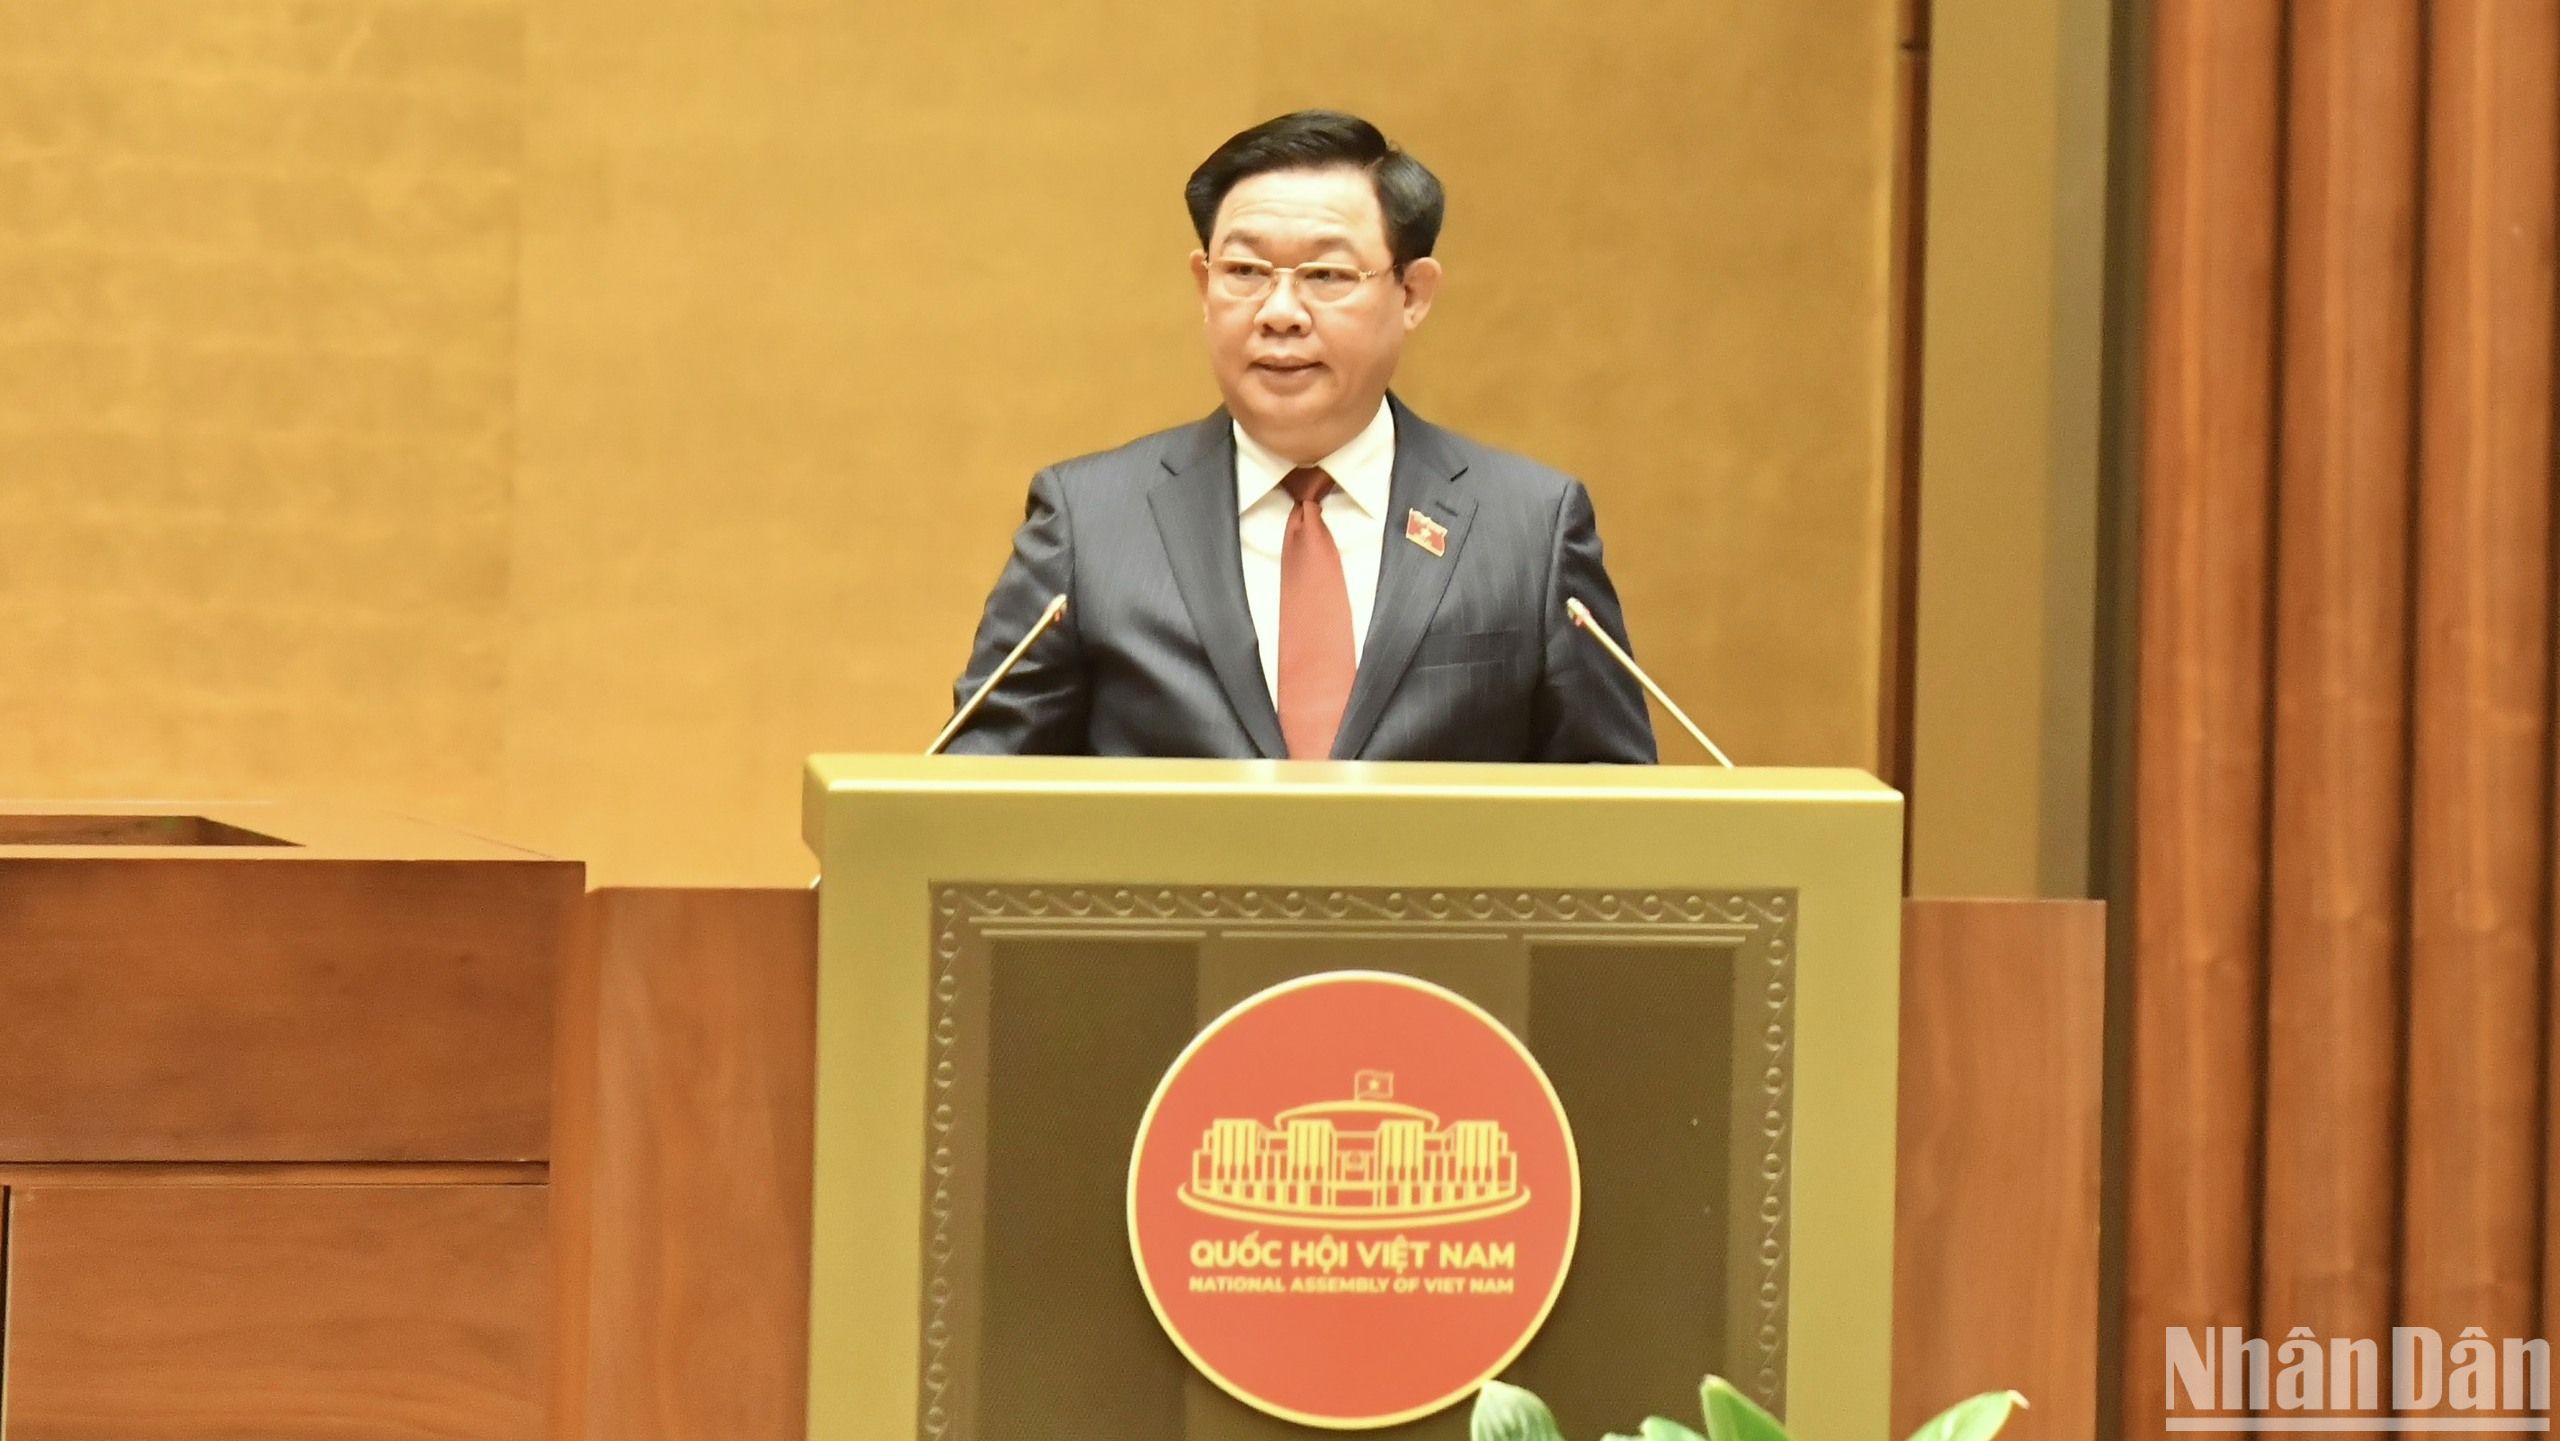 Chủ tịch Quốc hội Vương Đình Huệ phát biểu khai mạc kỳ họp. (Ảnh: ĐĂNG KHOA)